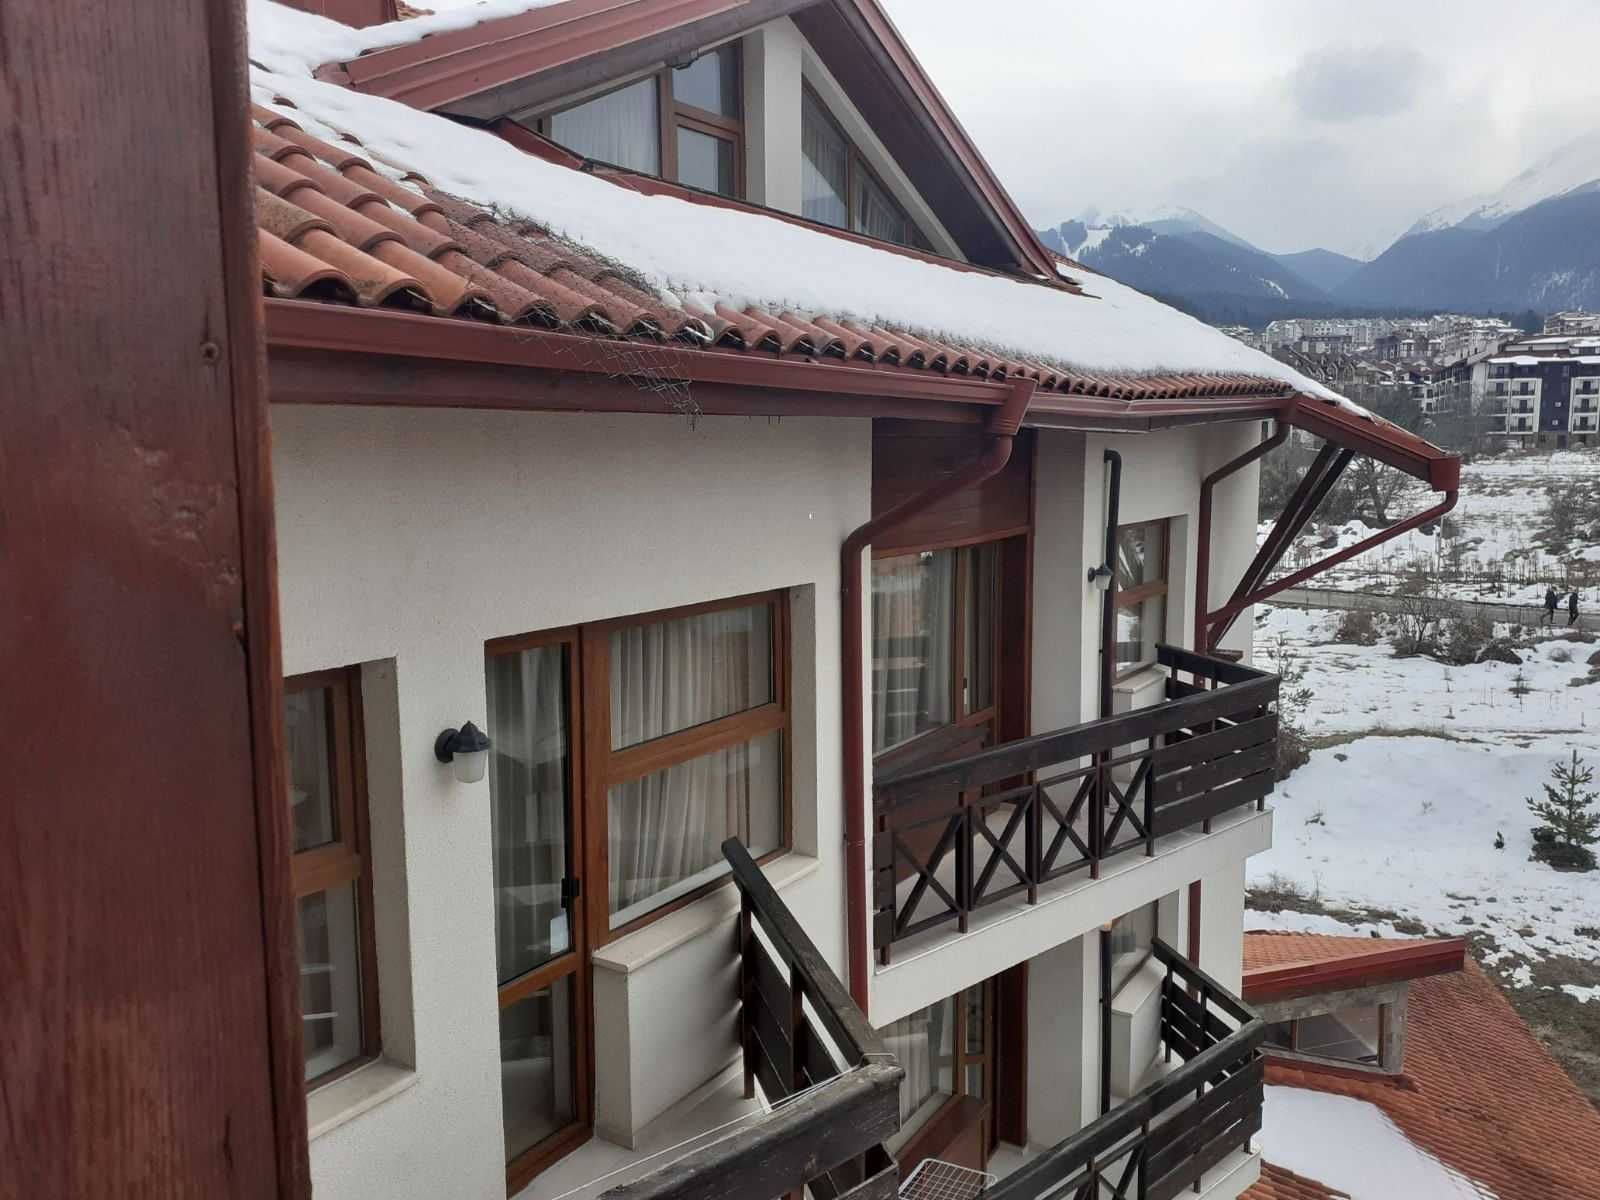 Ски зона, Банско: Маломерен двустаен апартамент с ниска поддръжка